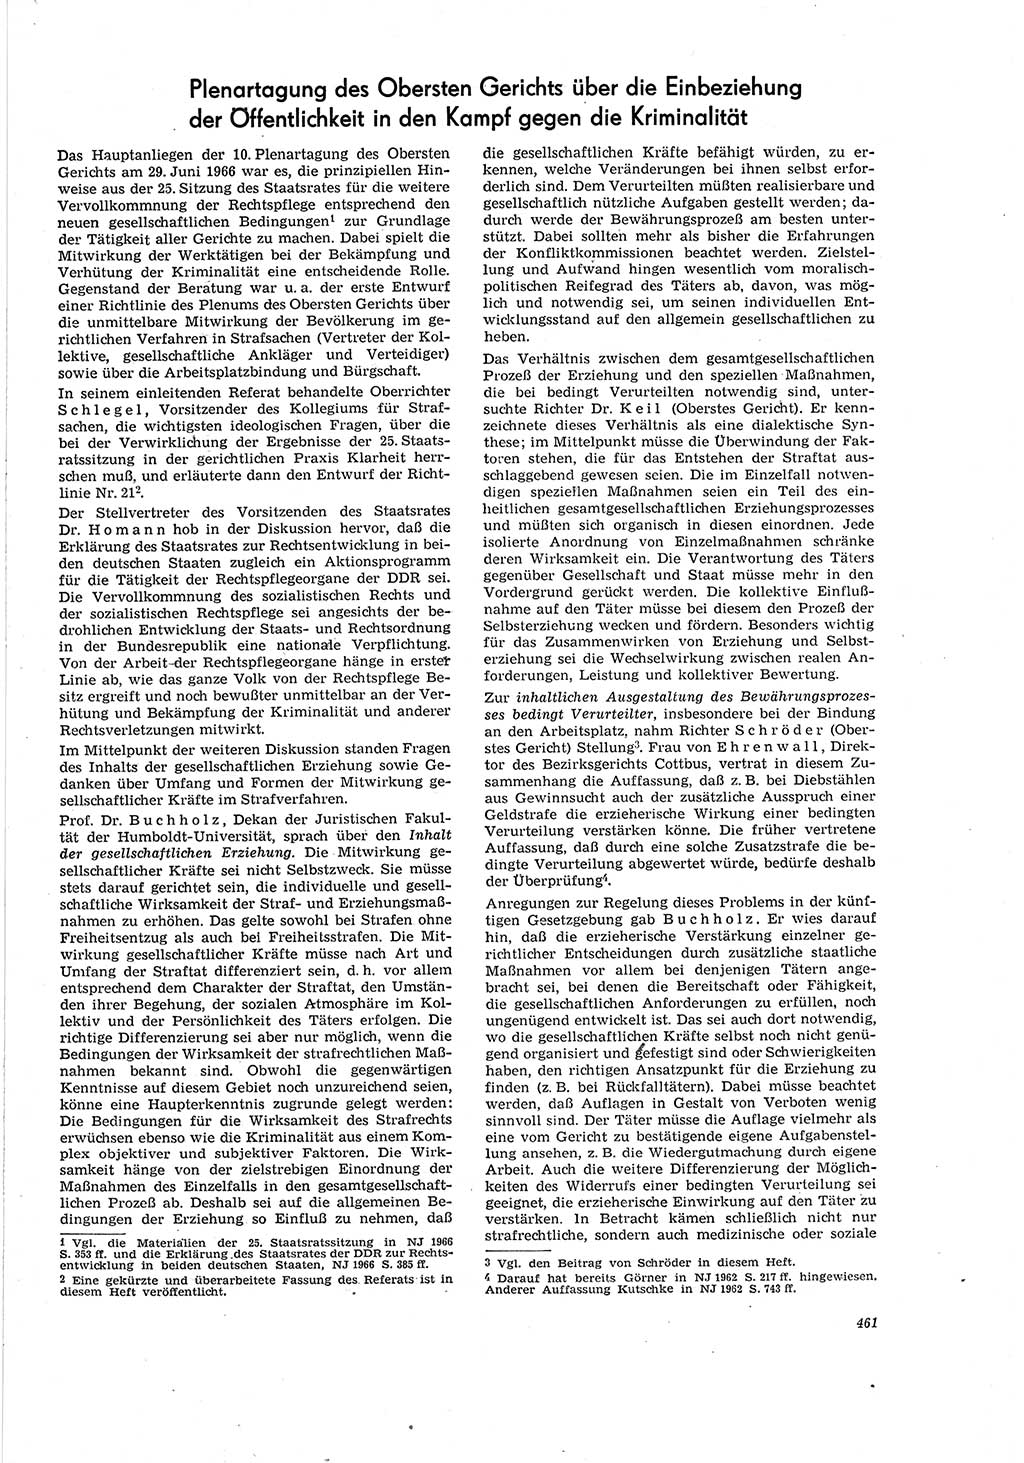 Neue Justiz (NJ), Zeitschrift für Recht und Rechtswissenschaft [Deutsche Demokratische Republik (DDR)], 20. Jahrgang 1966, Seite 461 (NJ DDR 1966, S. 461)